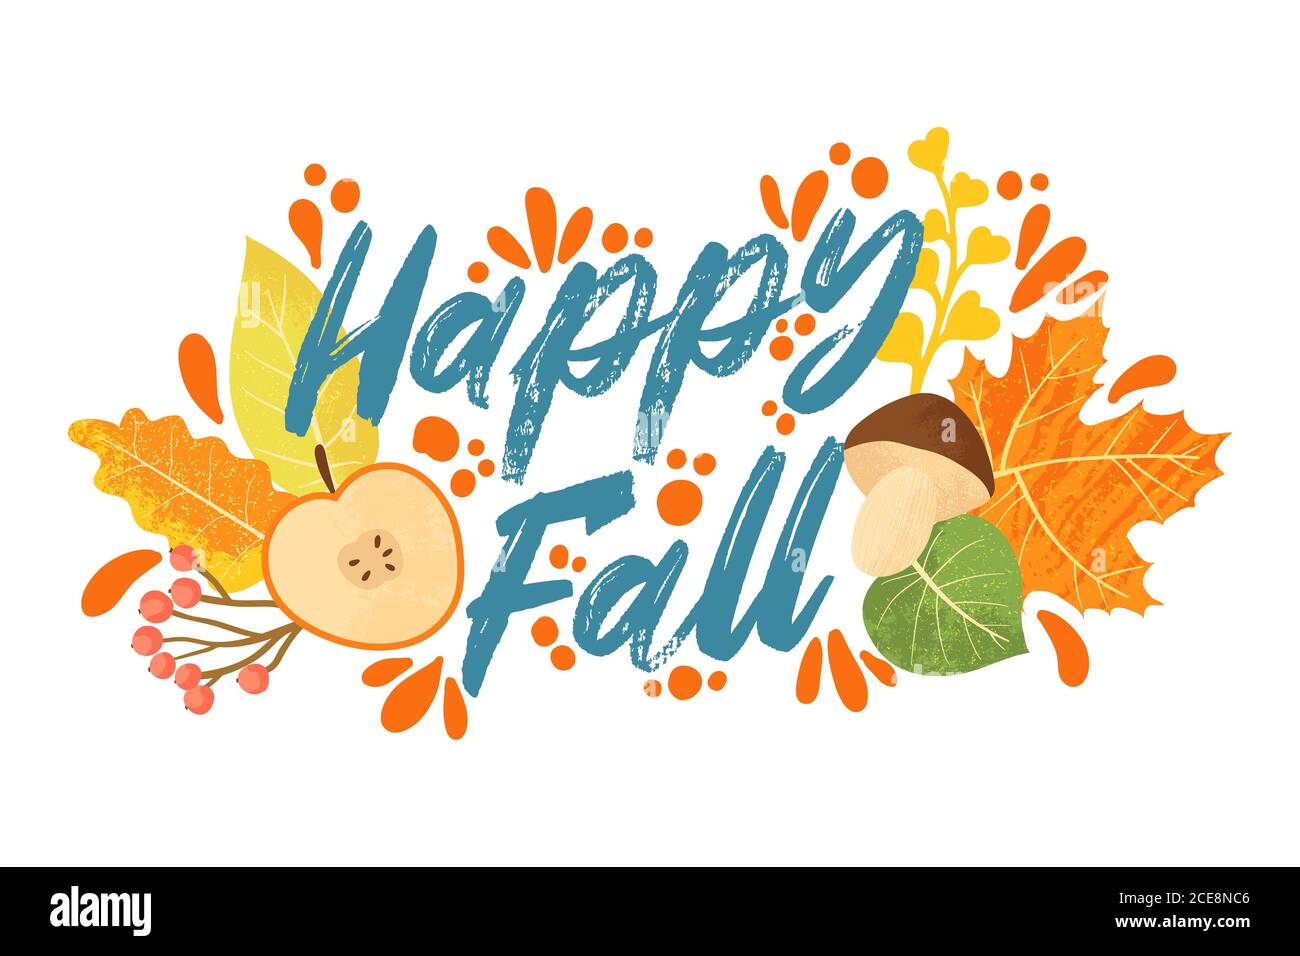 Happy Fall Typografie Zitate mit Herbstelementen. Vektor-Zitate mit Herbstblättern, Apfel, Beeren und Pilze. Isoliert auf weißem Hintergrund. Stock Vektor